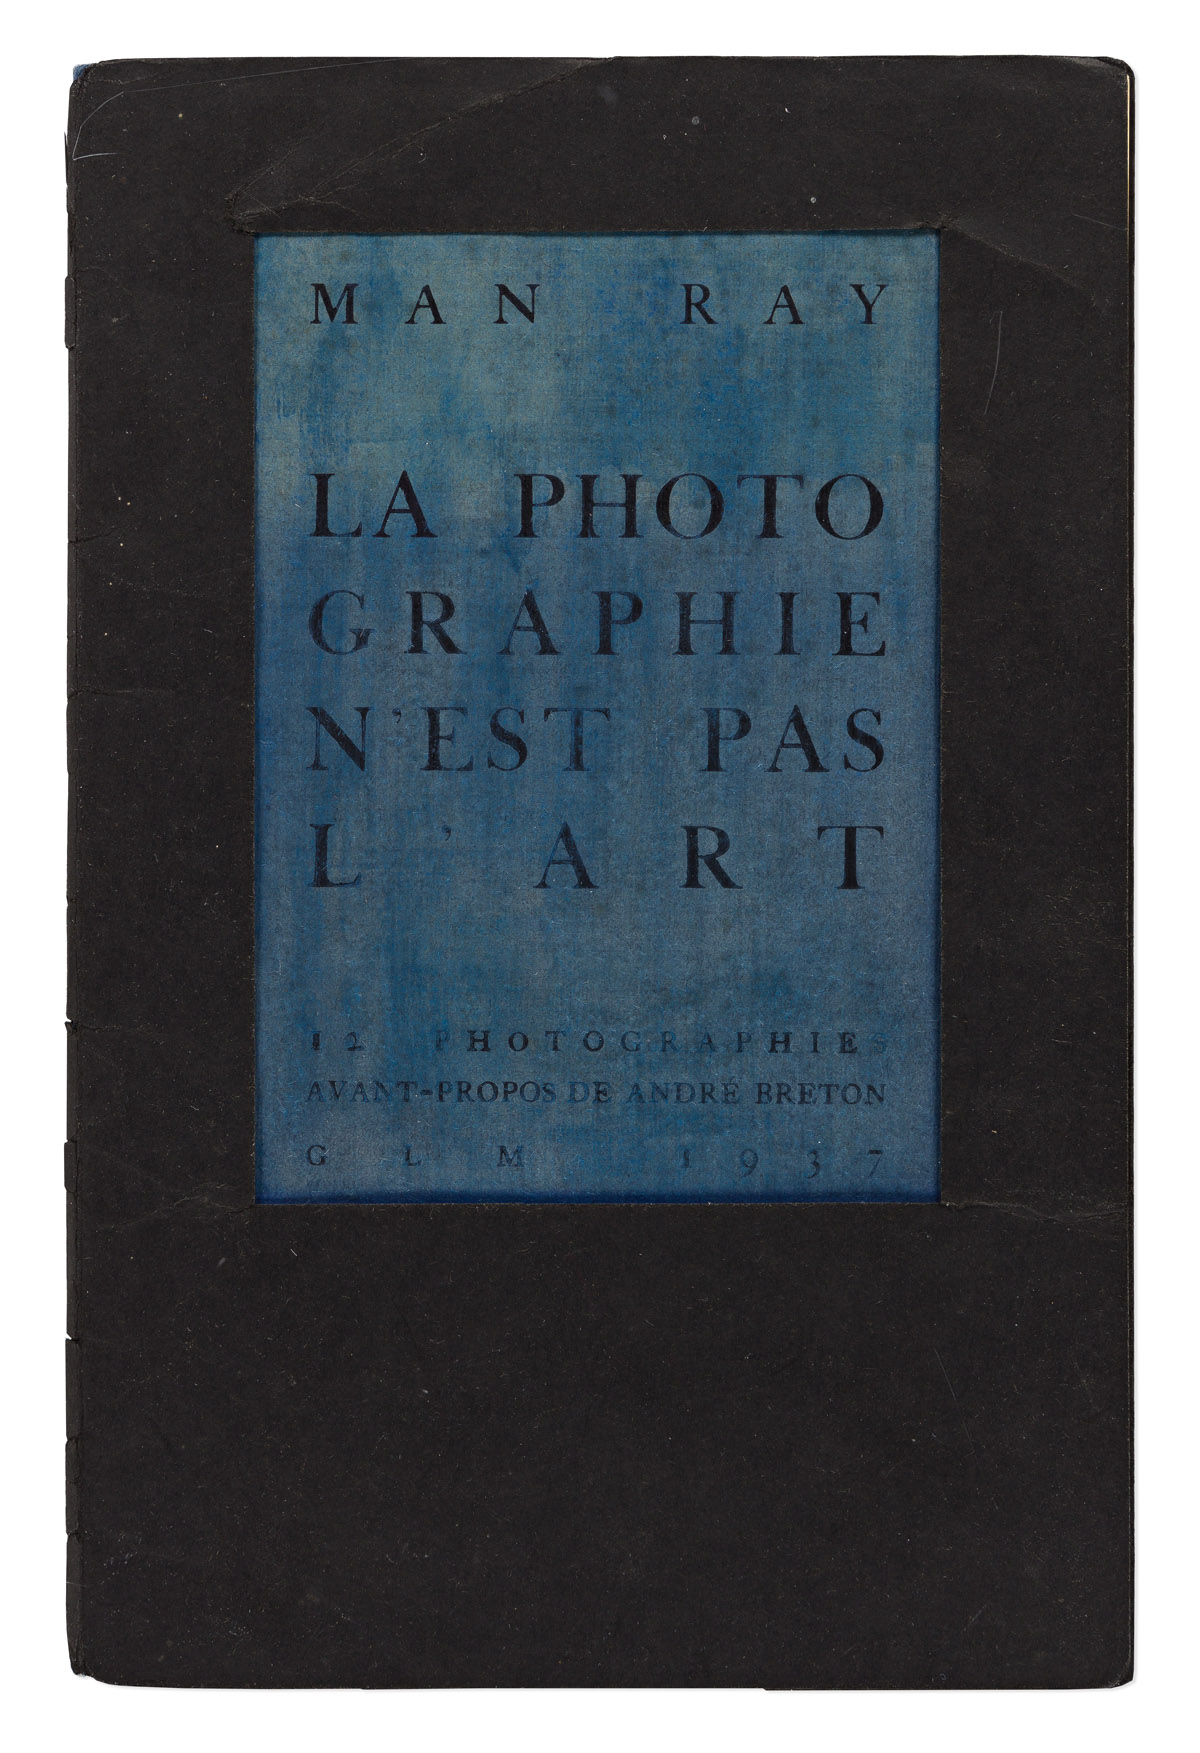 MAN RAY (1890-1976) La Photographie nest pas lArt.